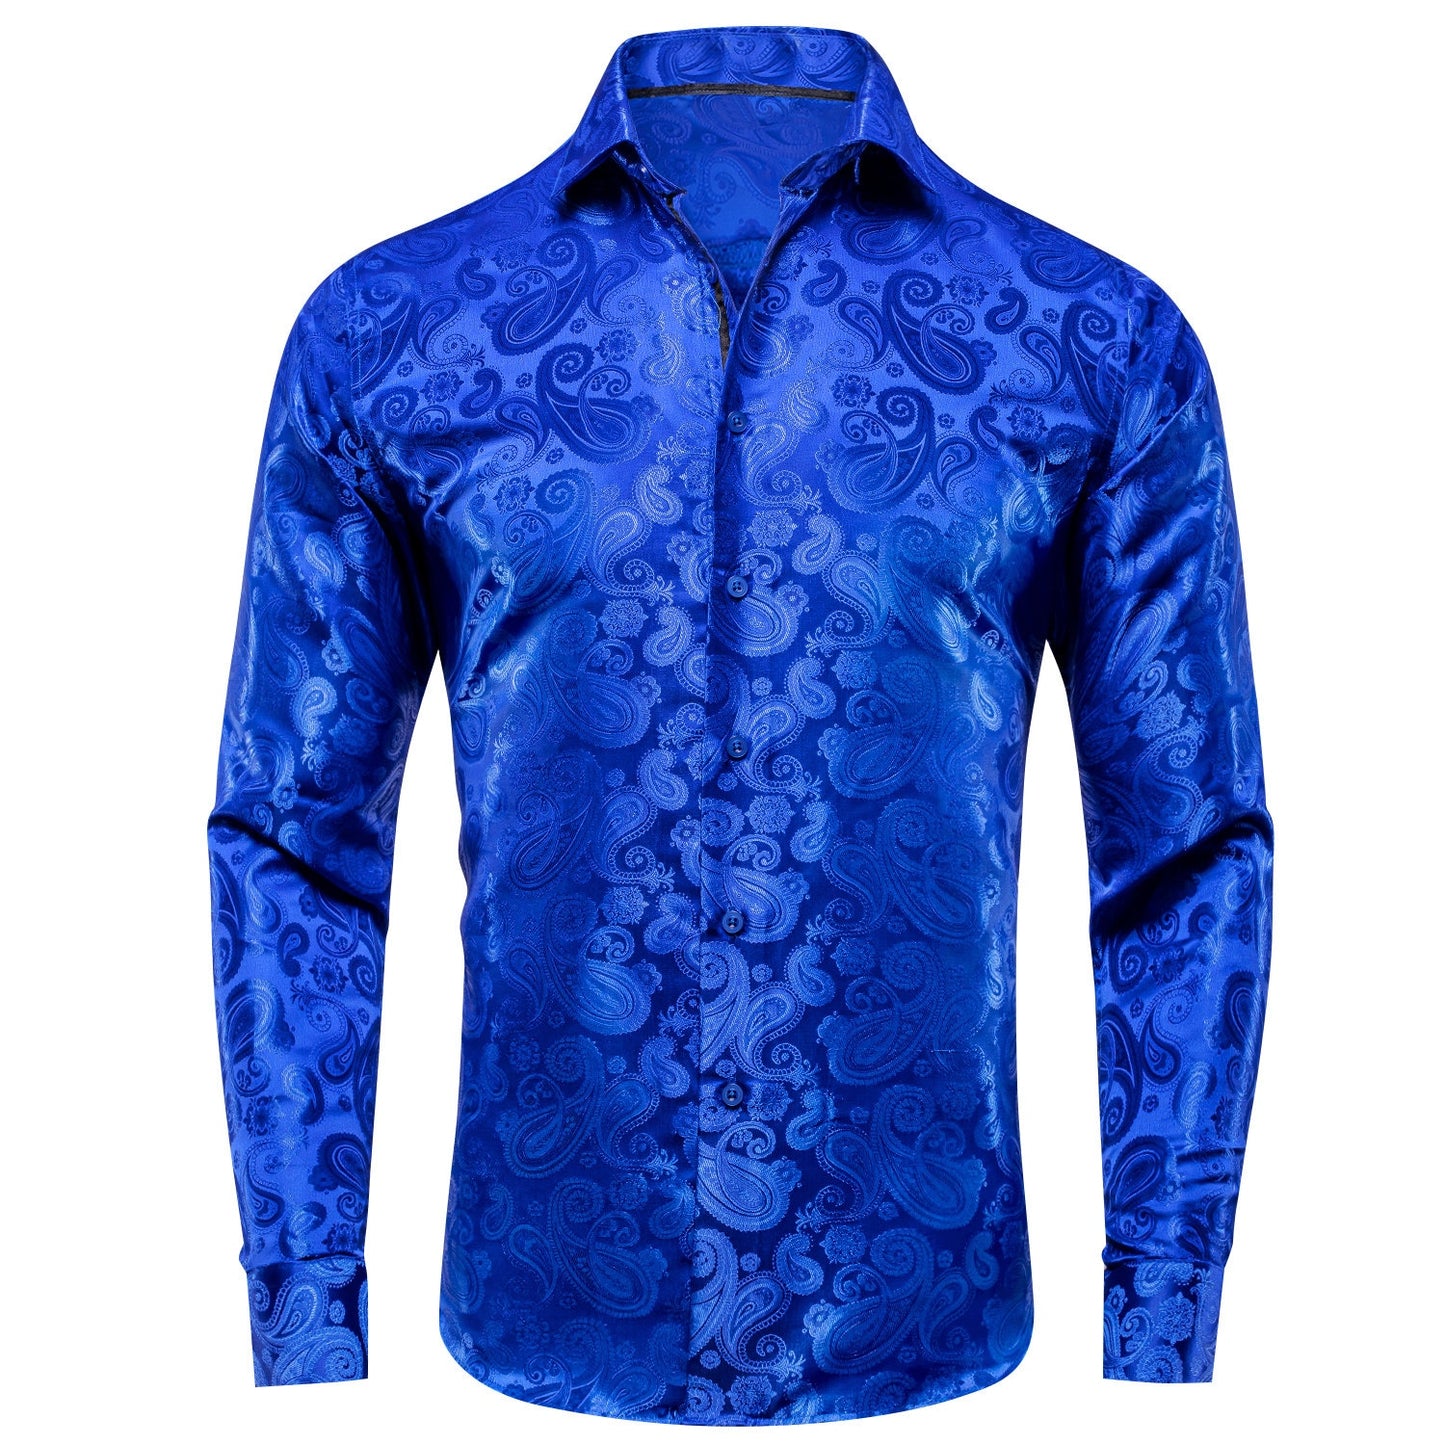 Men's Dress Shirt Long Sleeve Bright Blue